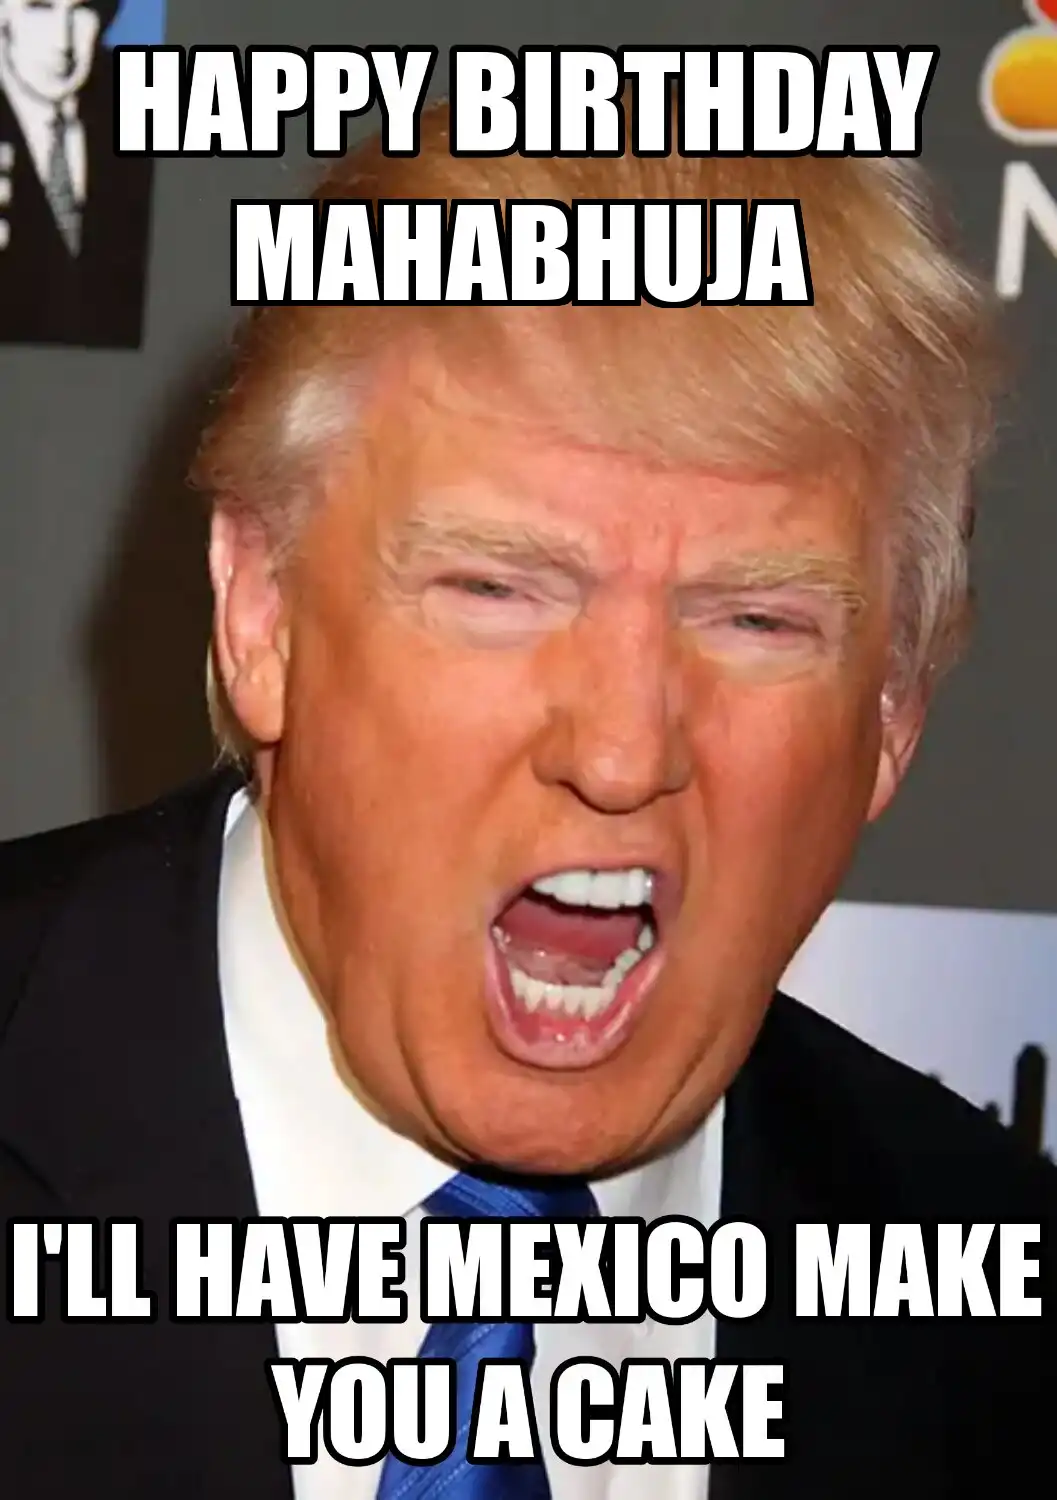 Happy Birthday Mahabhuja Mexico Make You A Cake Meme